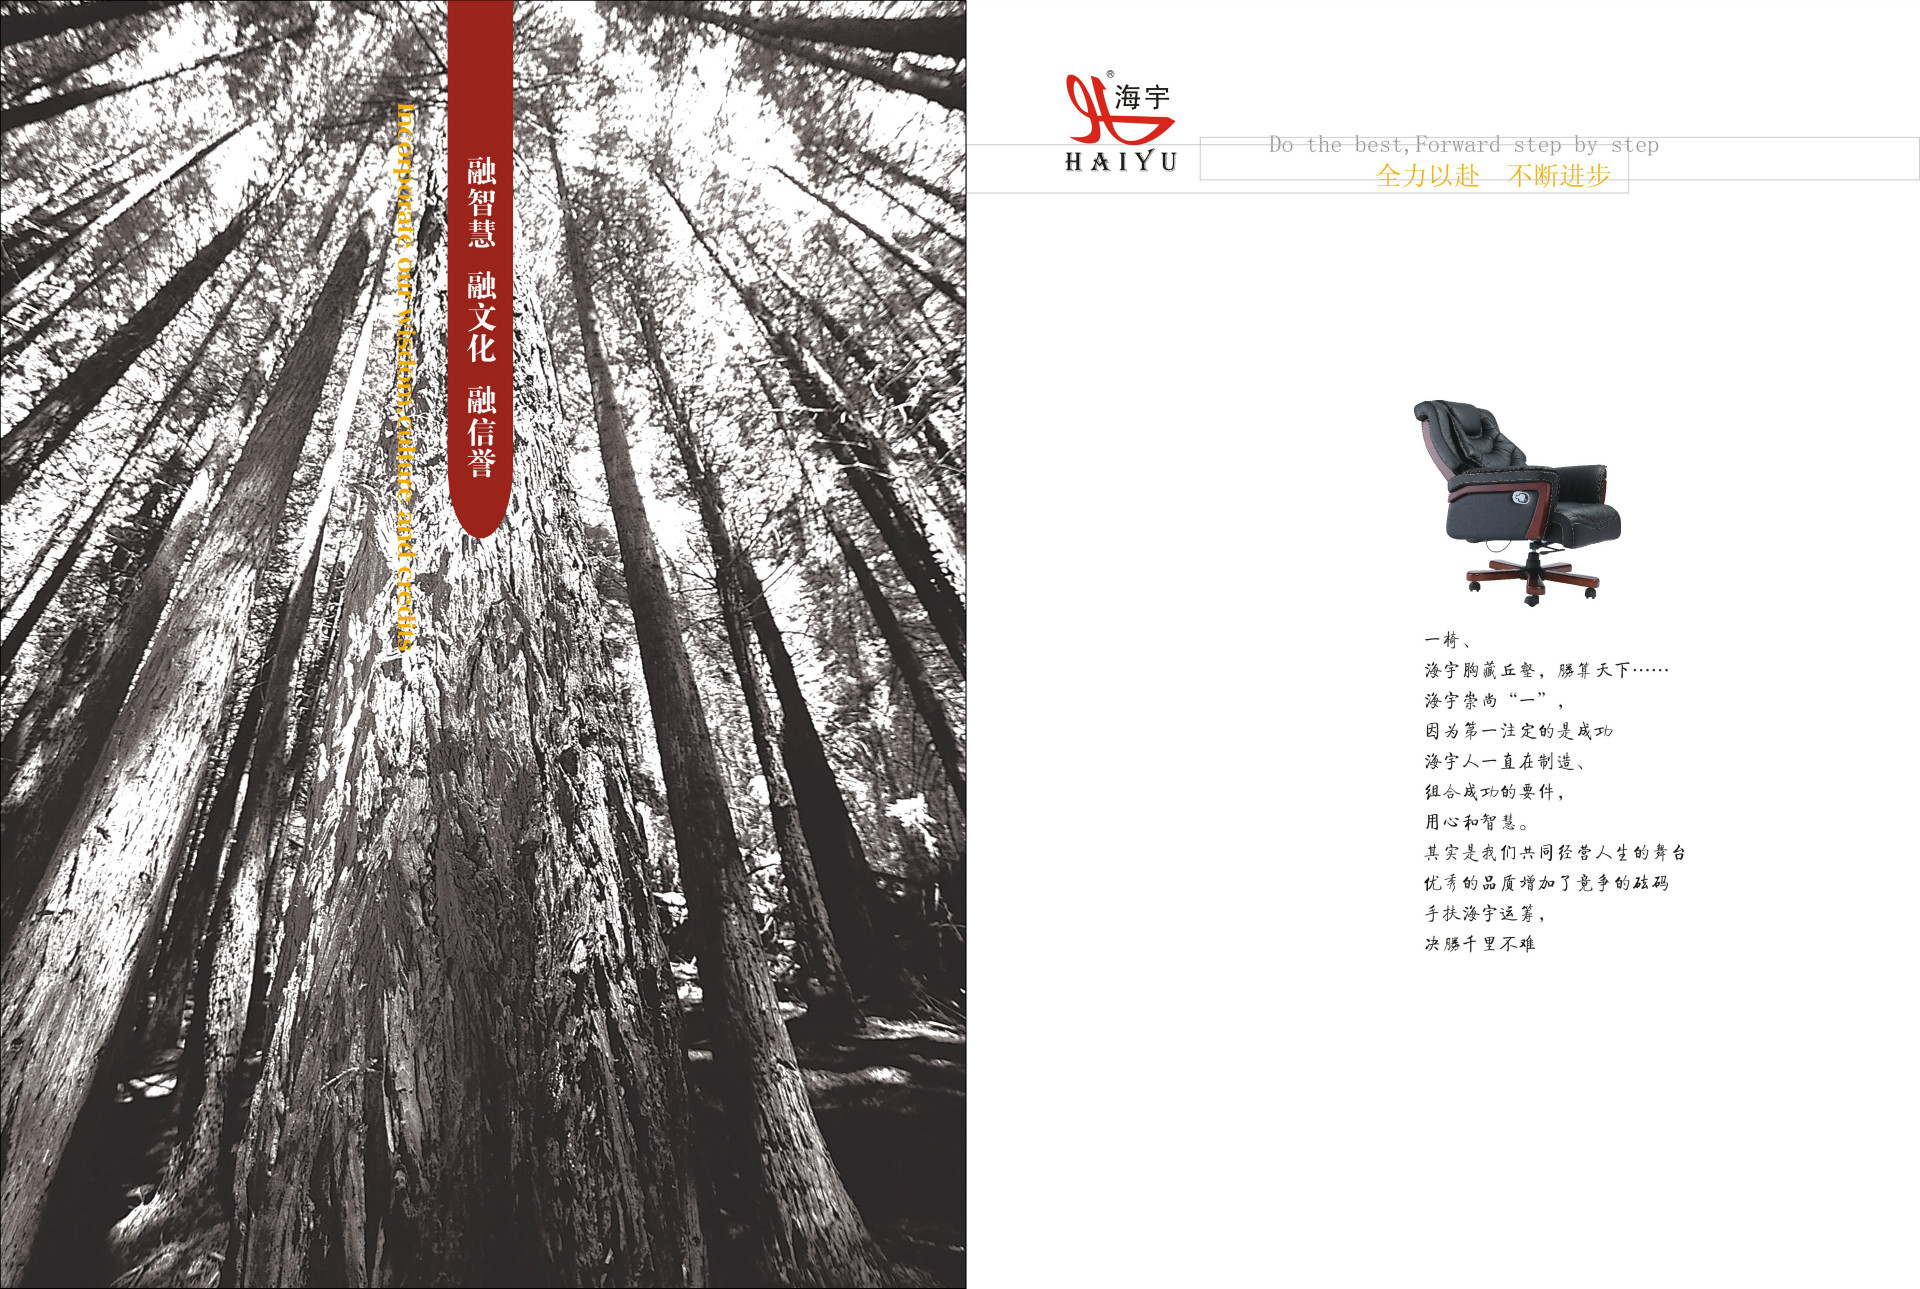 【企业形象画册印刷 公司文化宣传册设计制作